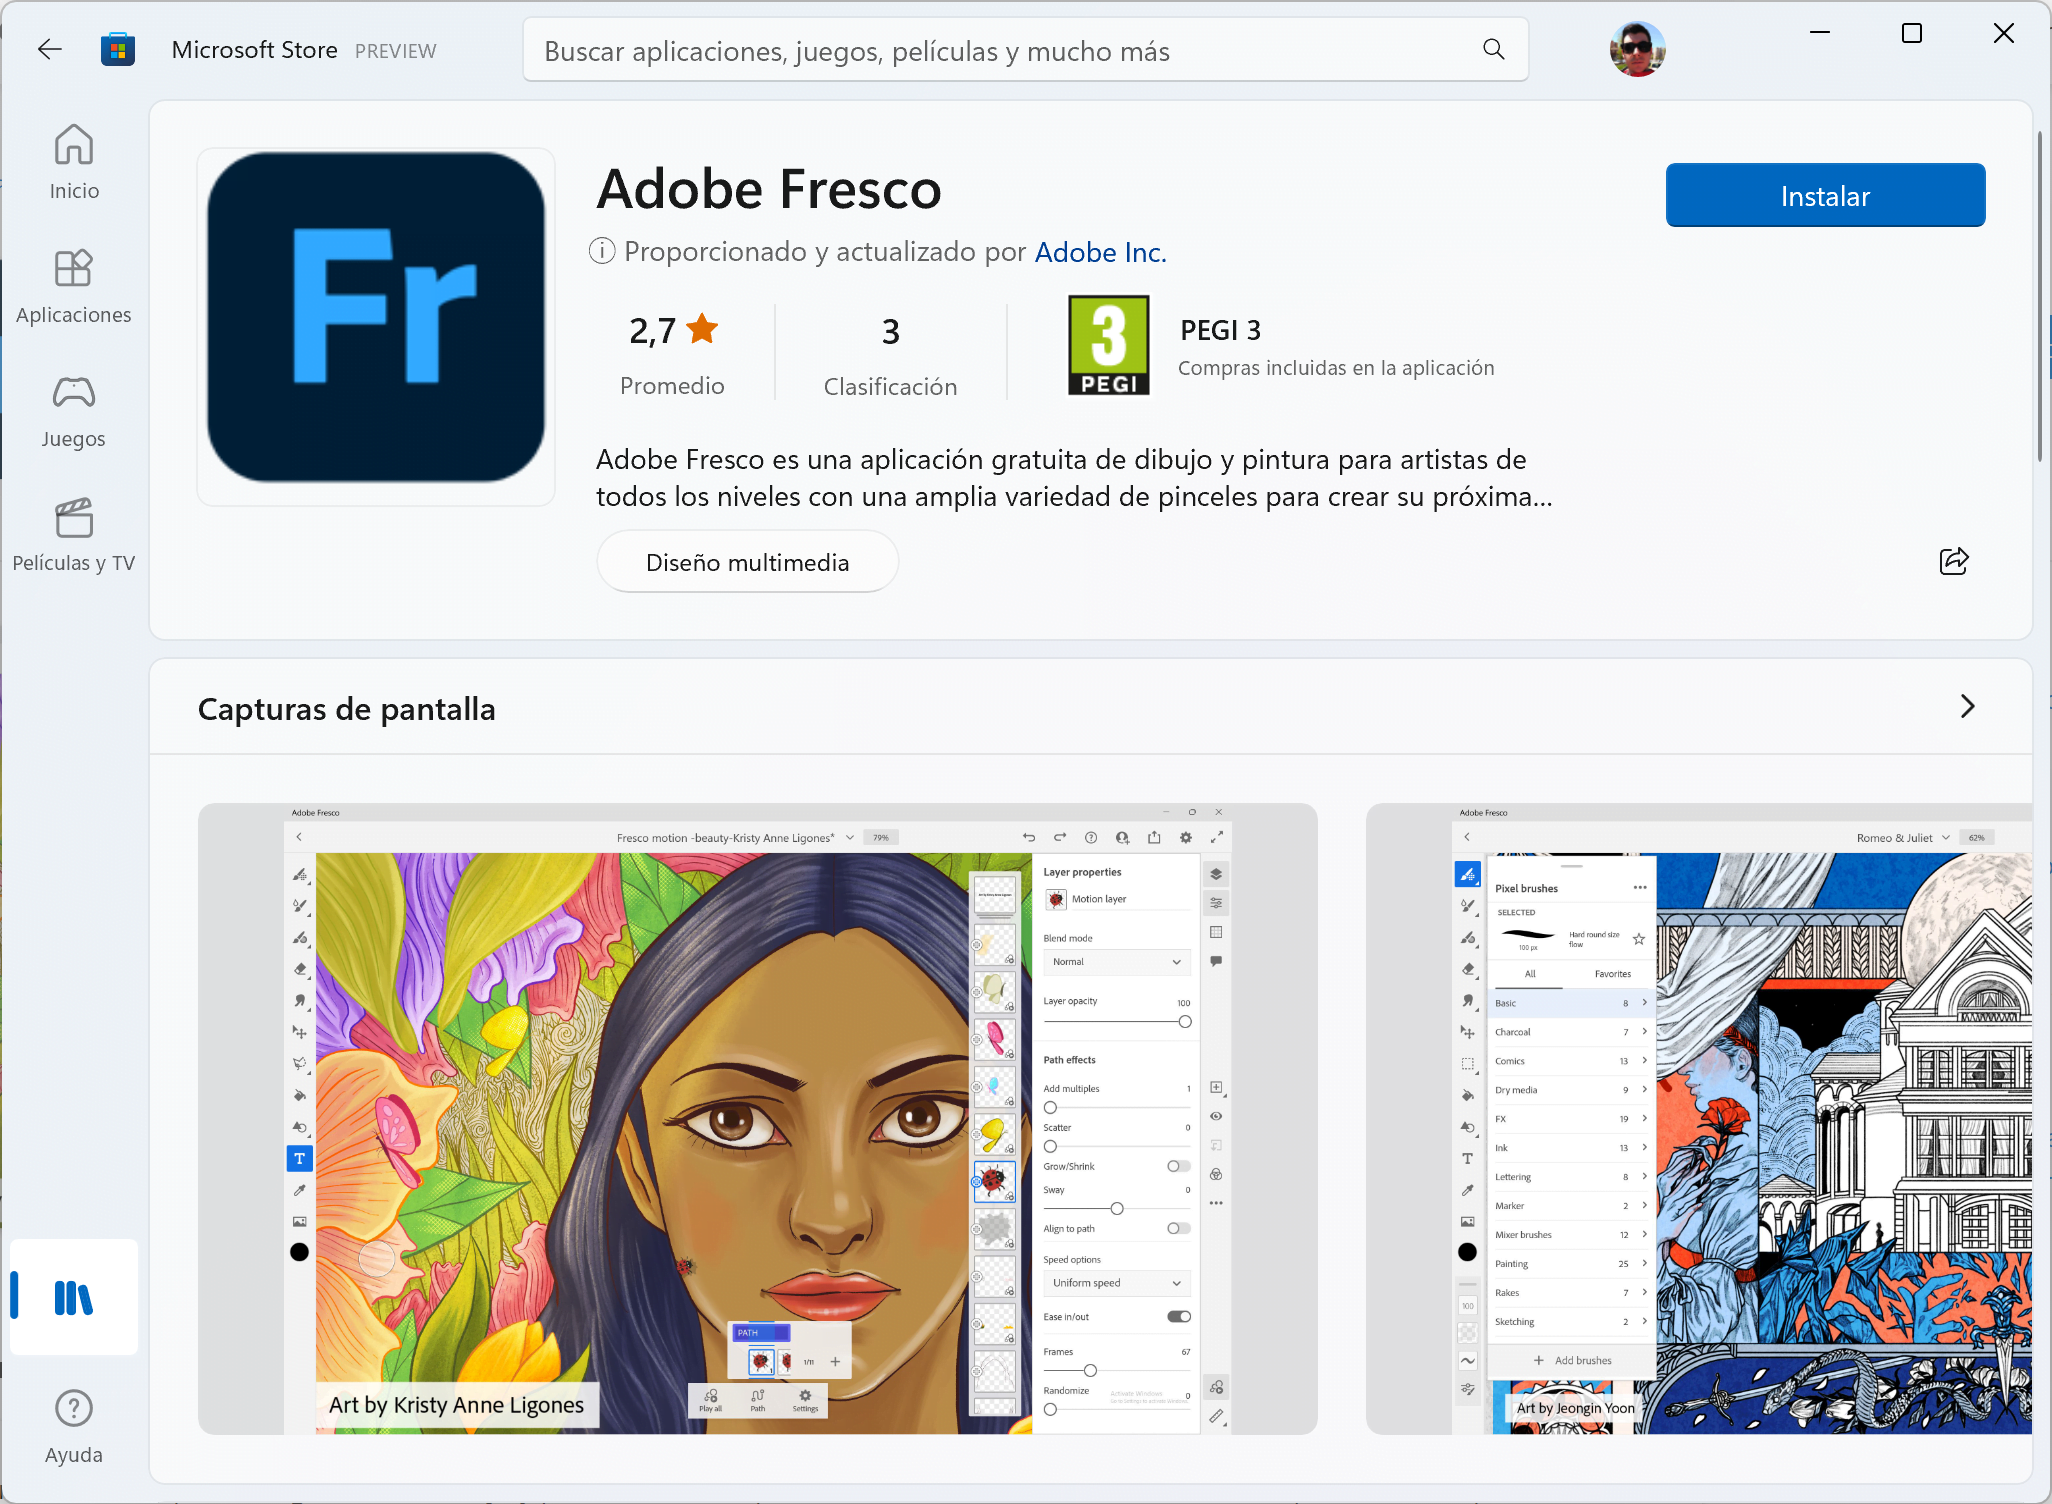 Screenshot of Adobe Fresco in the Microsoft Store